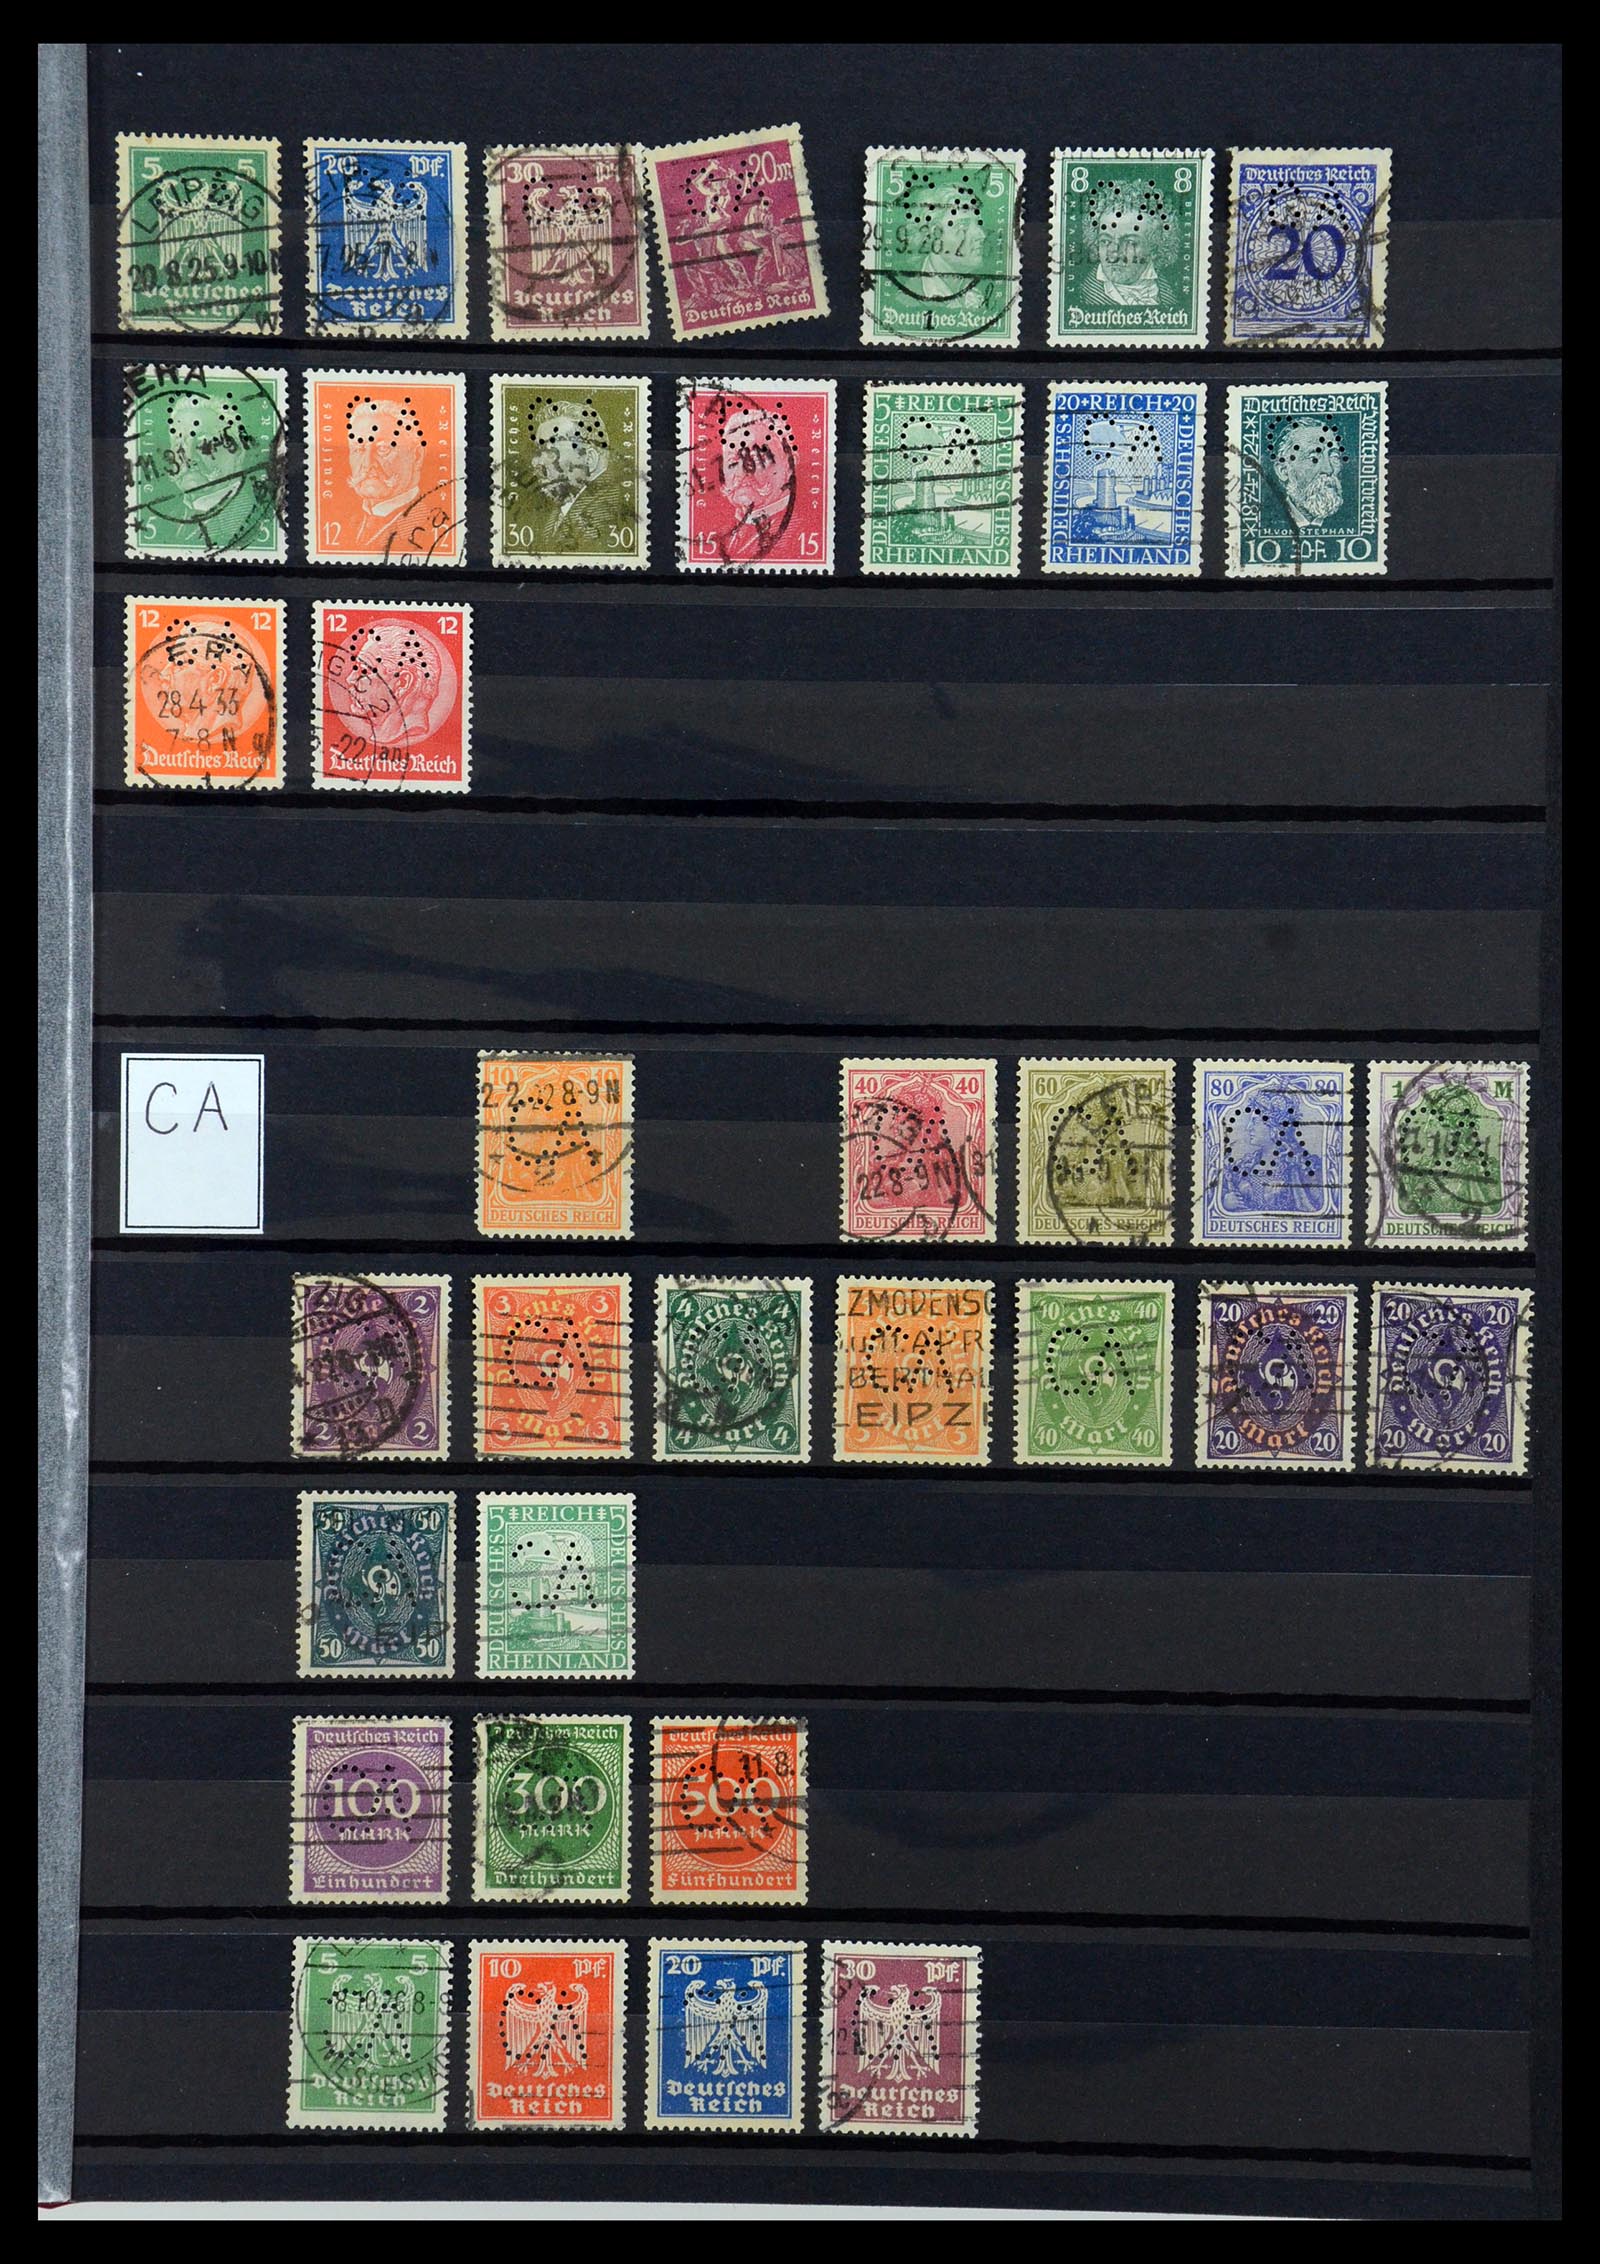 36405 055 - Stamp collection 36405 German Reich perfins 1880-1945.